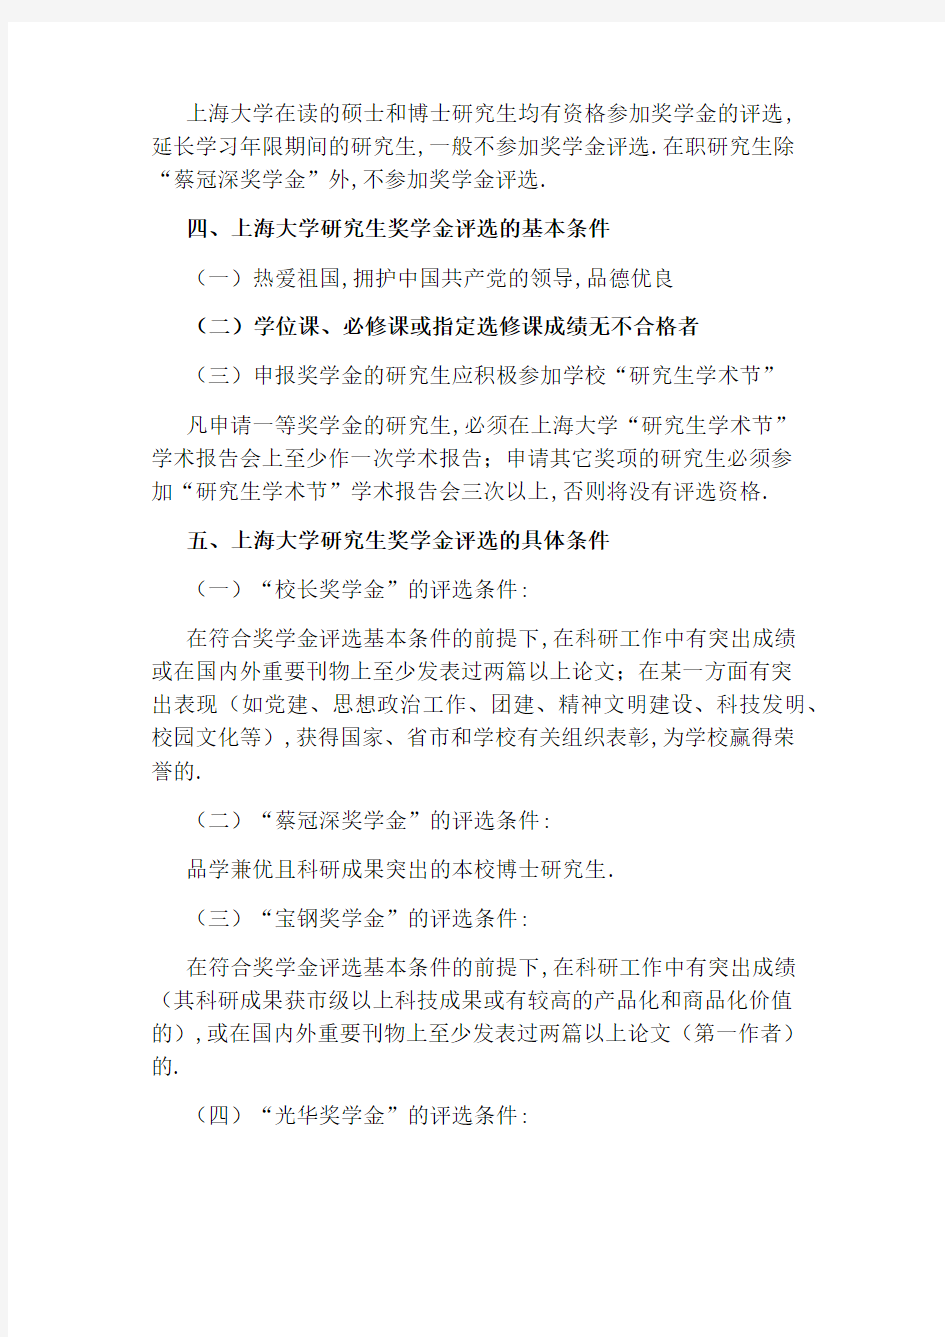 上海大学研究生普通奖学金管理办法